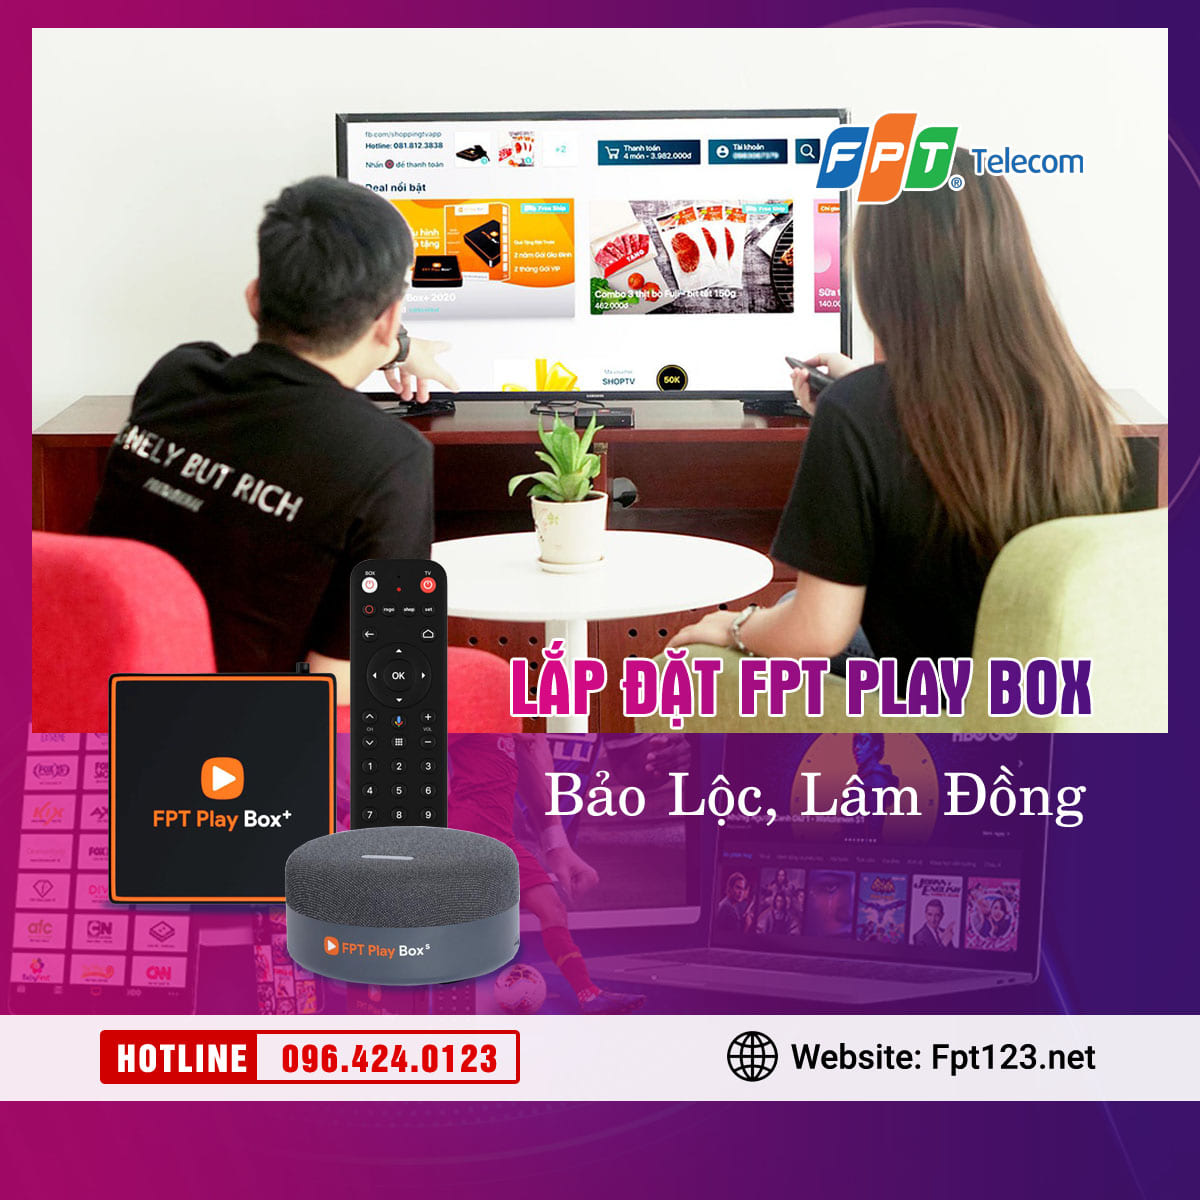 Lắp đặt FPT Play Box tại Bảo Lộc, Lâm Đồng